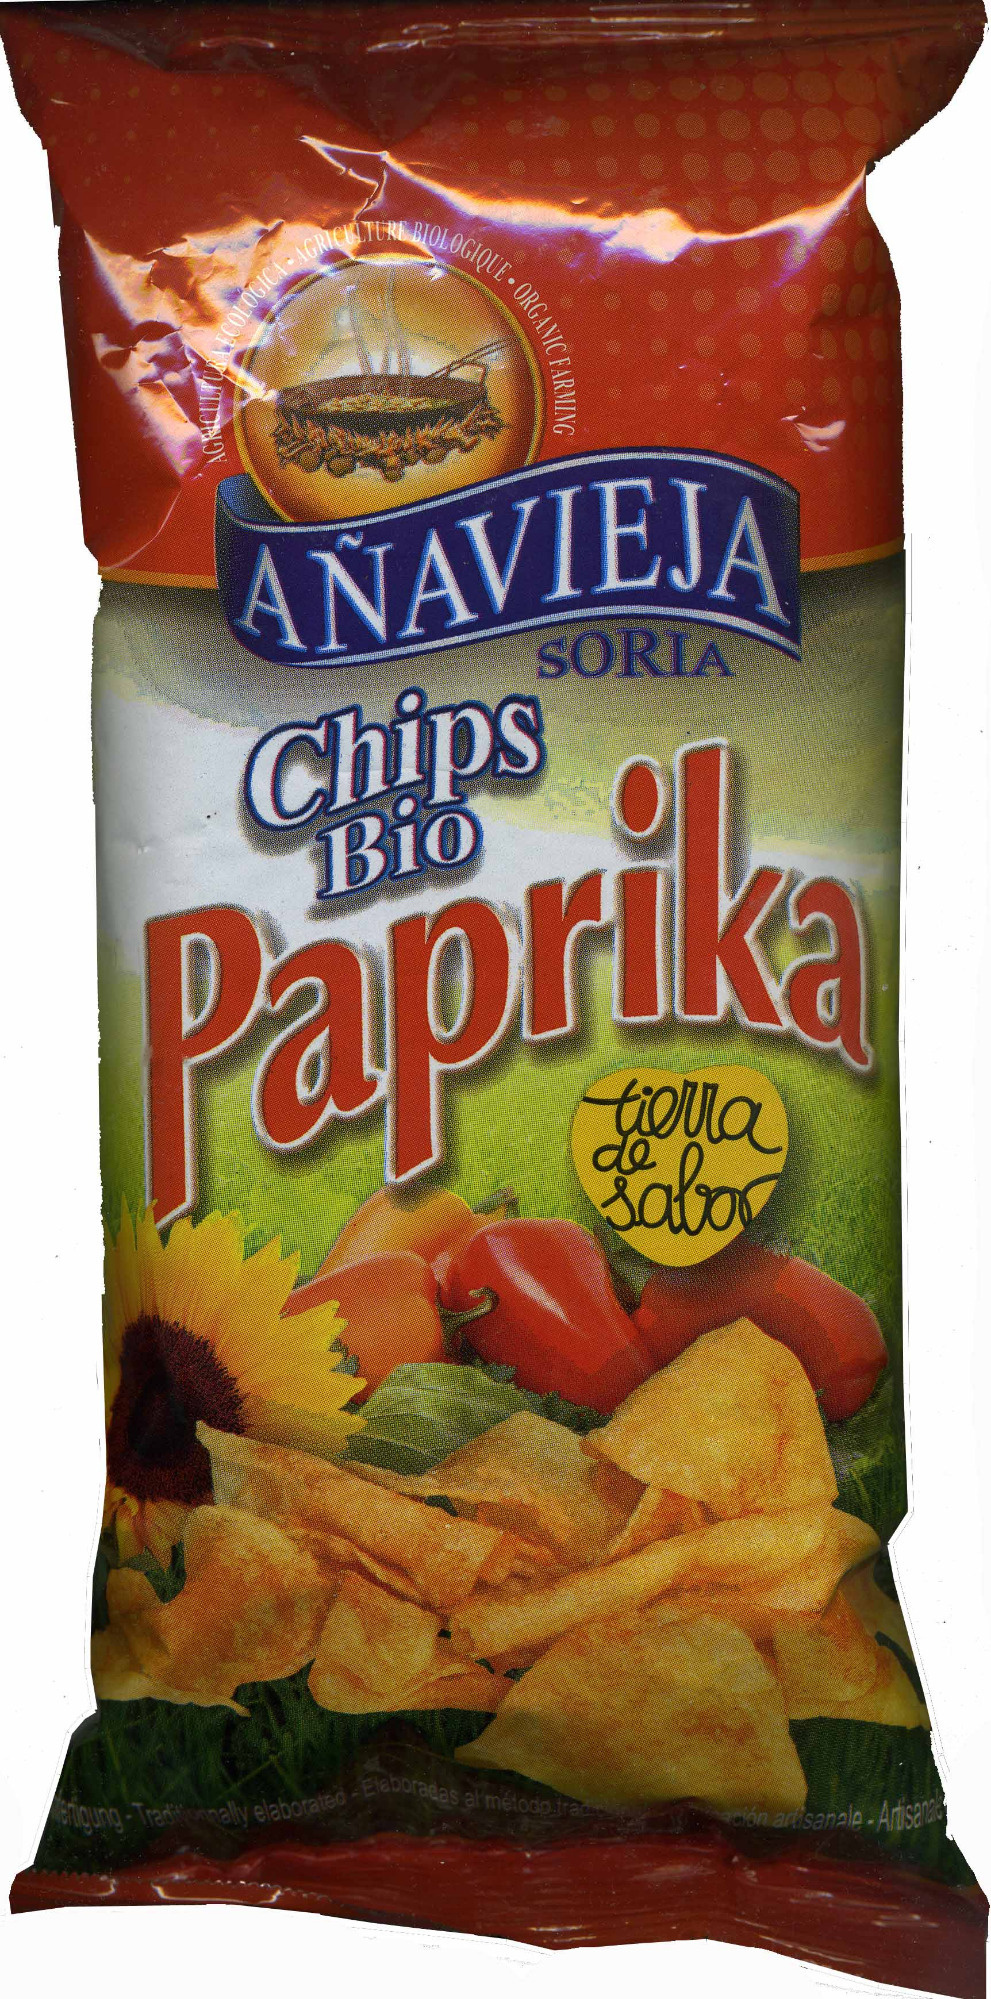 Chips bio paprika - Produit - es